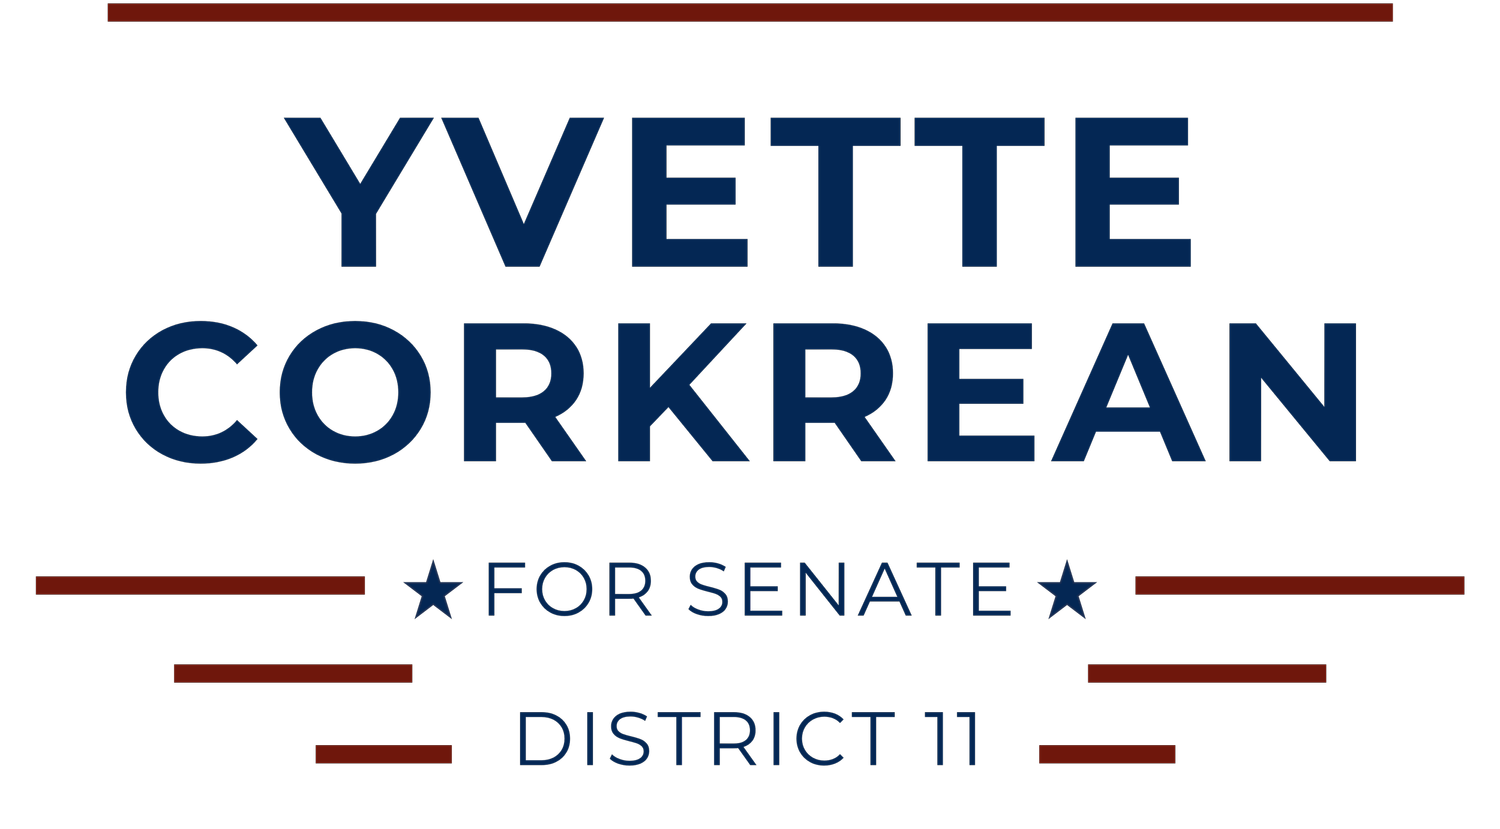 Yvette Corkrean for Senate